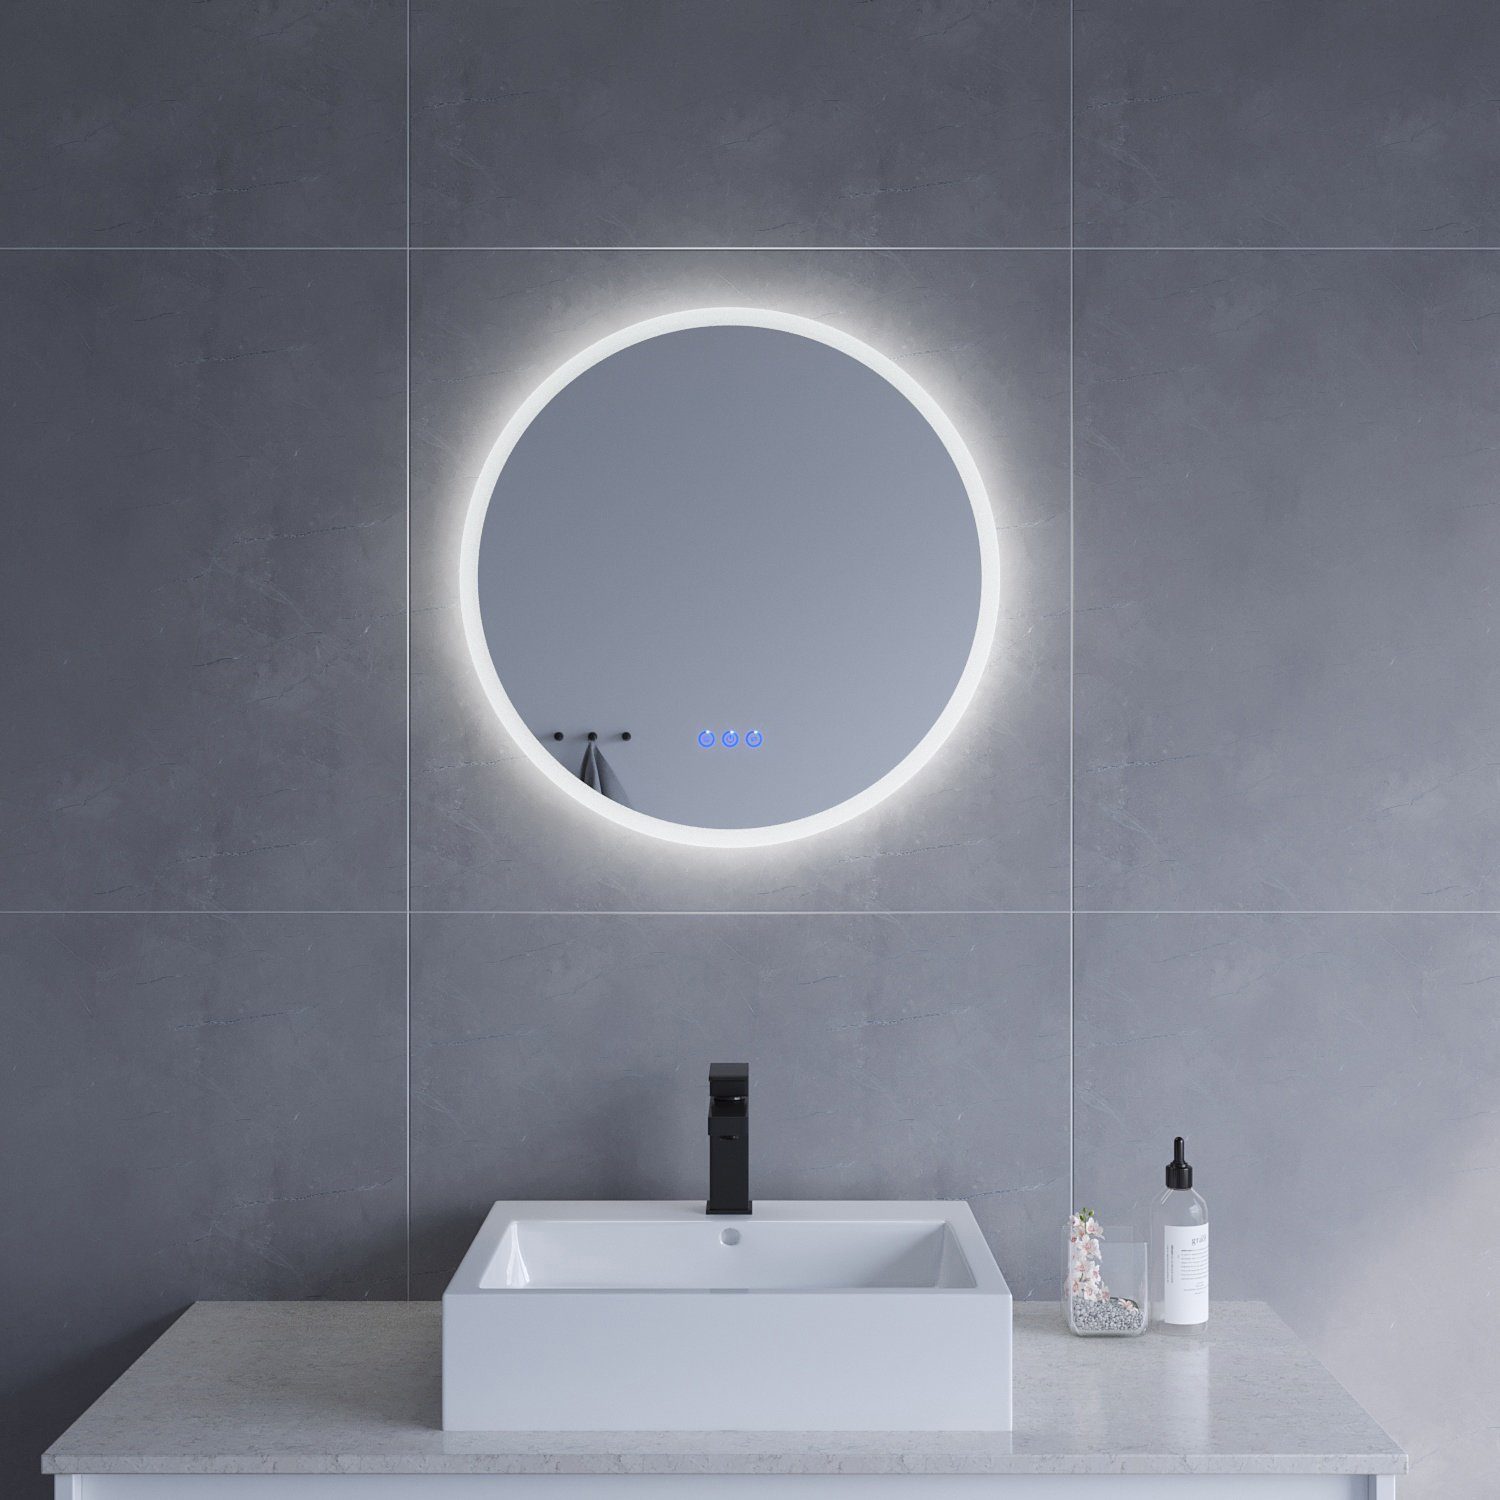 AQUALAVOS Badspiegel Spiegel Rund Badezimmerspiegel mit LED Beleuchtung Φ 60 cm Wandspiegel, mit 6400K Kaltweiß&Warmweiß 3000K Licht Beleuchtung, Energiesparender